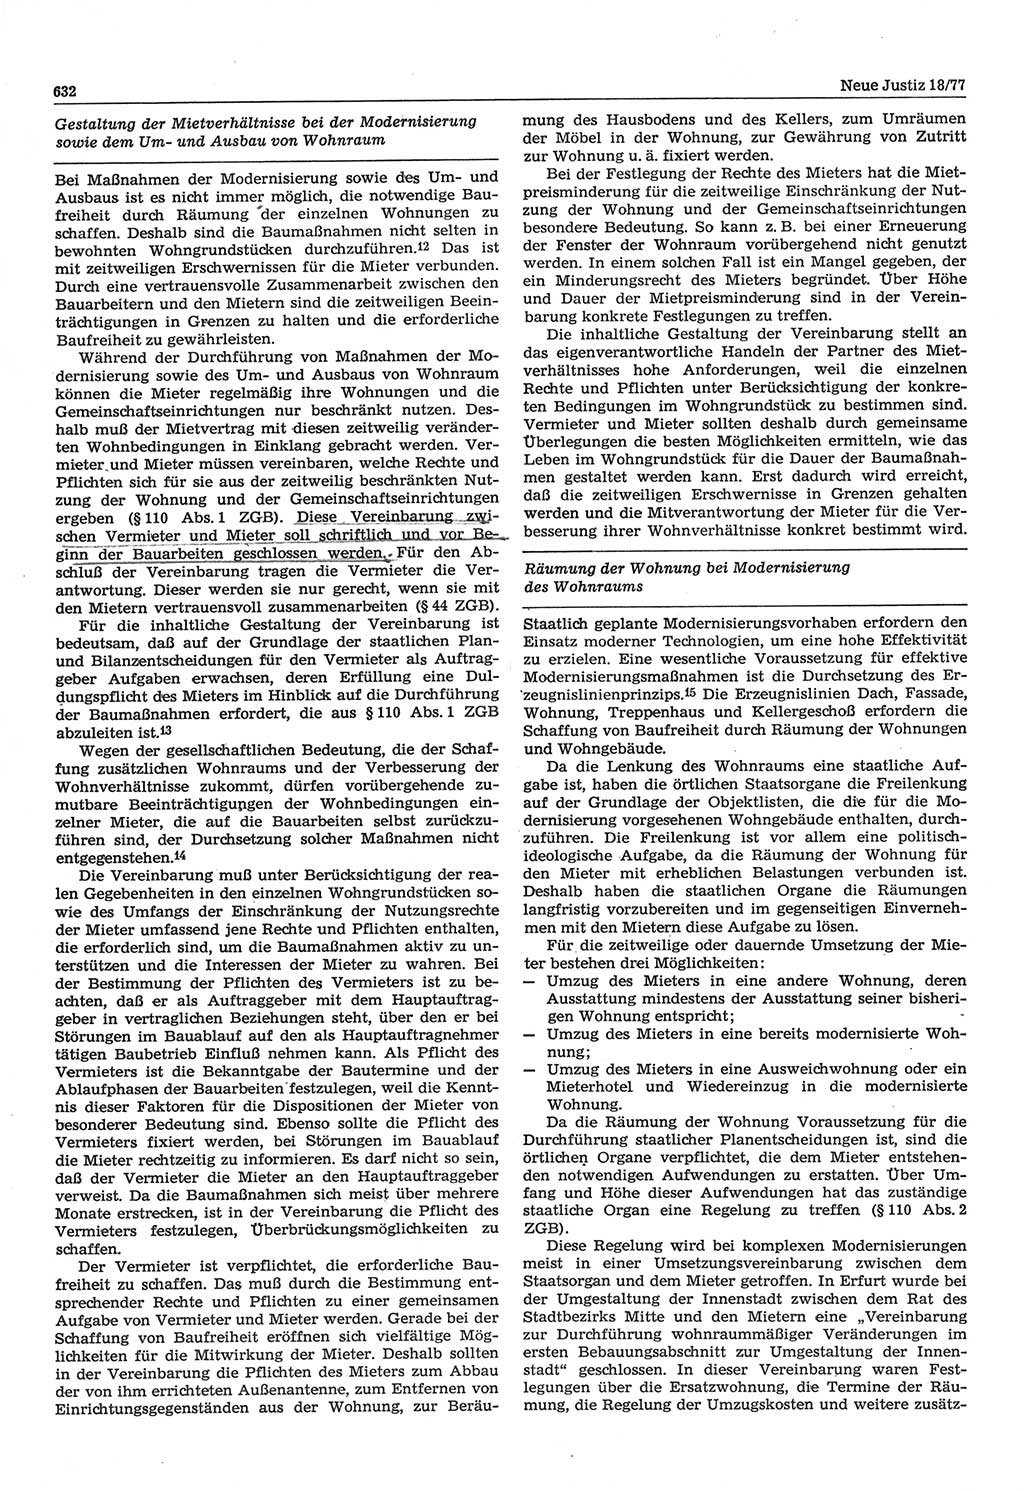 Neue Justiz (NJ), Zeitschrift für Recht und Rechtswissenschaft-Zeitschrift, sozialistisches Recht und Gesetzlichkeit, 31. Jahrgang 1977, Seite 632 (NJ DDR 1977, S. 632)